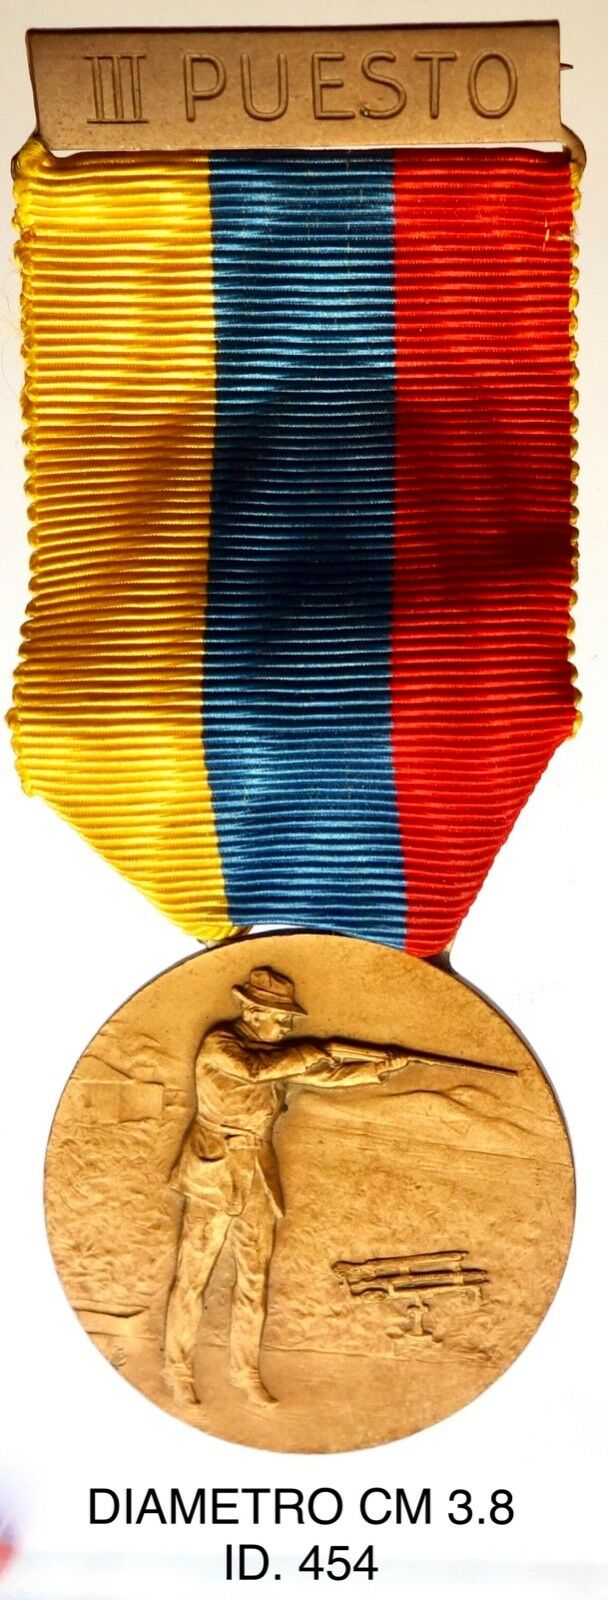 Caracas VIII° PUESTO VIII Jugos Deportivos Centroamericanos 1958 medaglia “454”